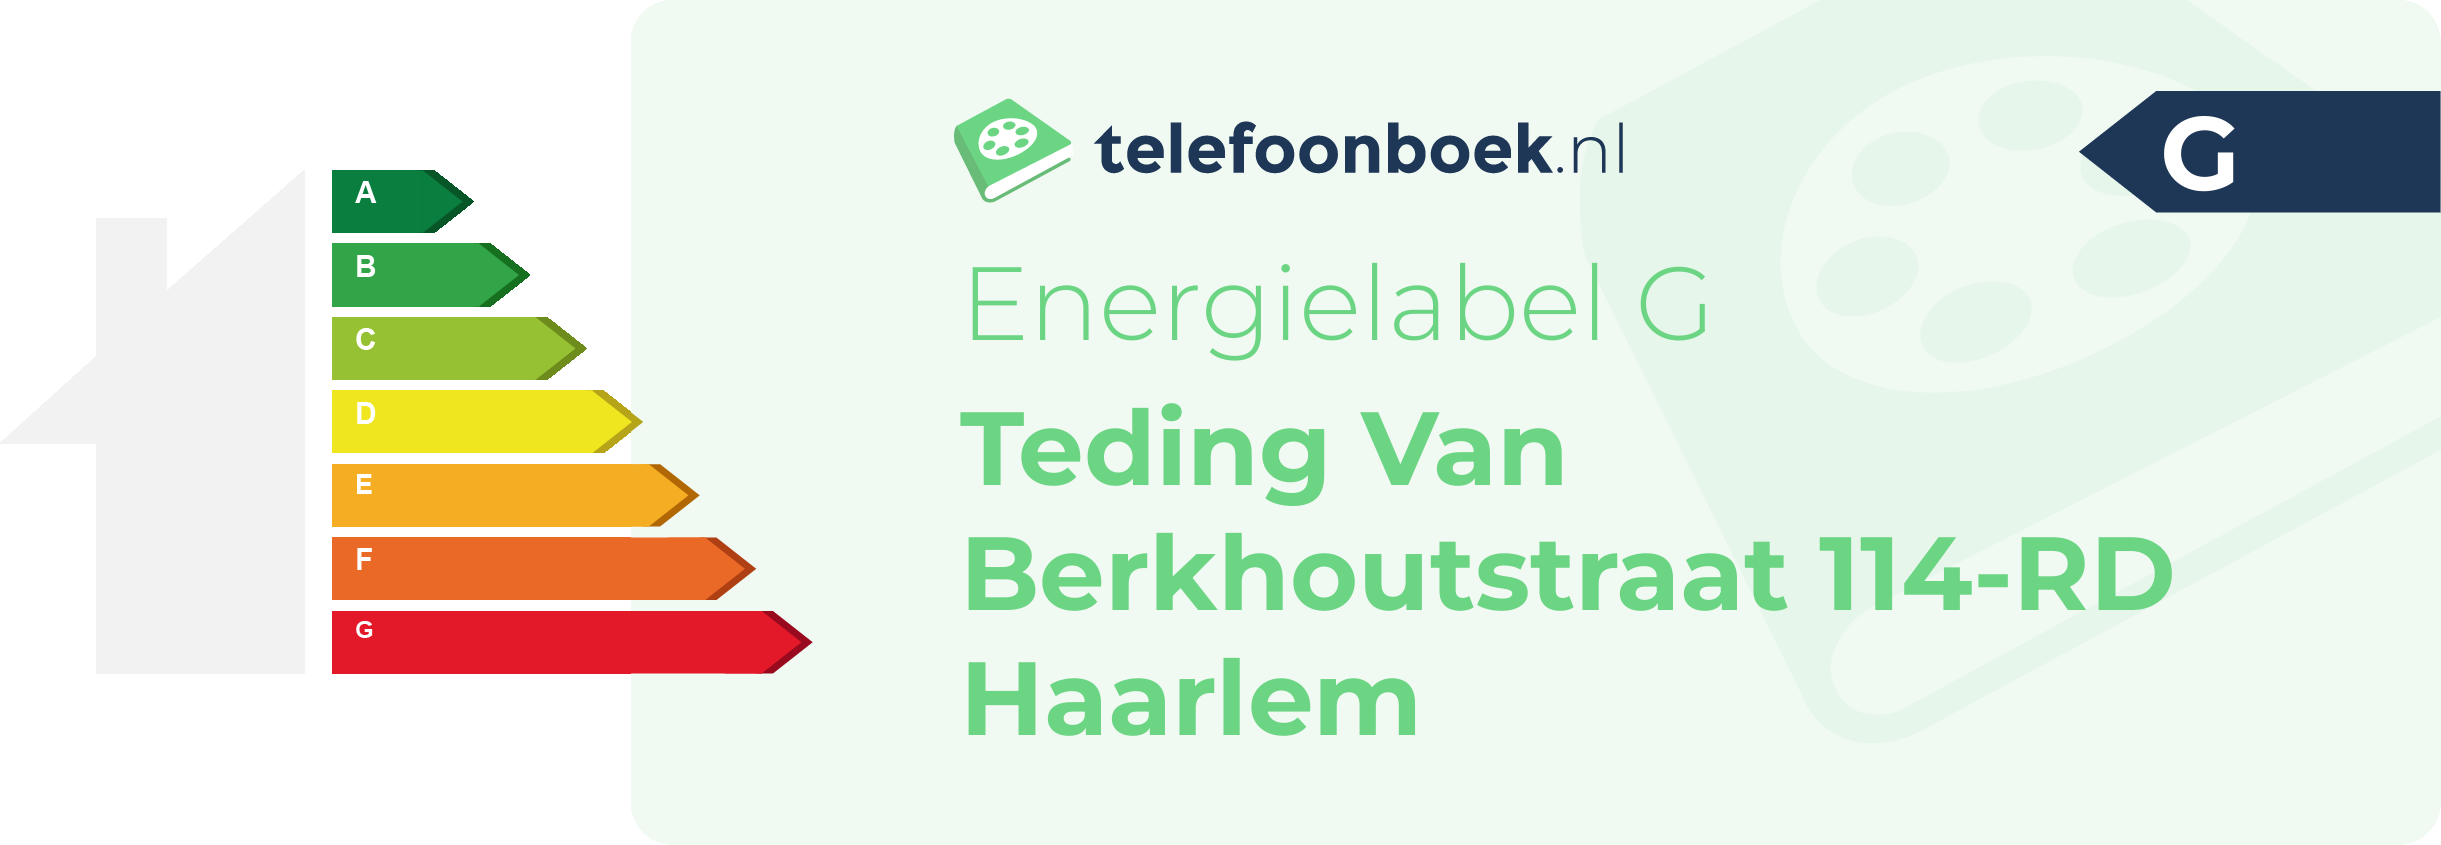 Energielabel Teding Van Berkhoutstraat 114-RD Haarlem